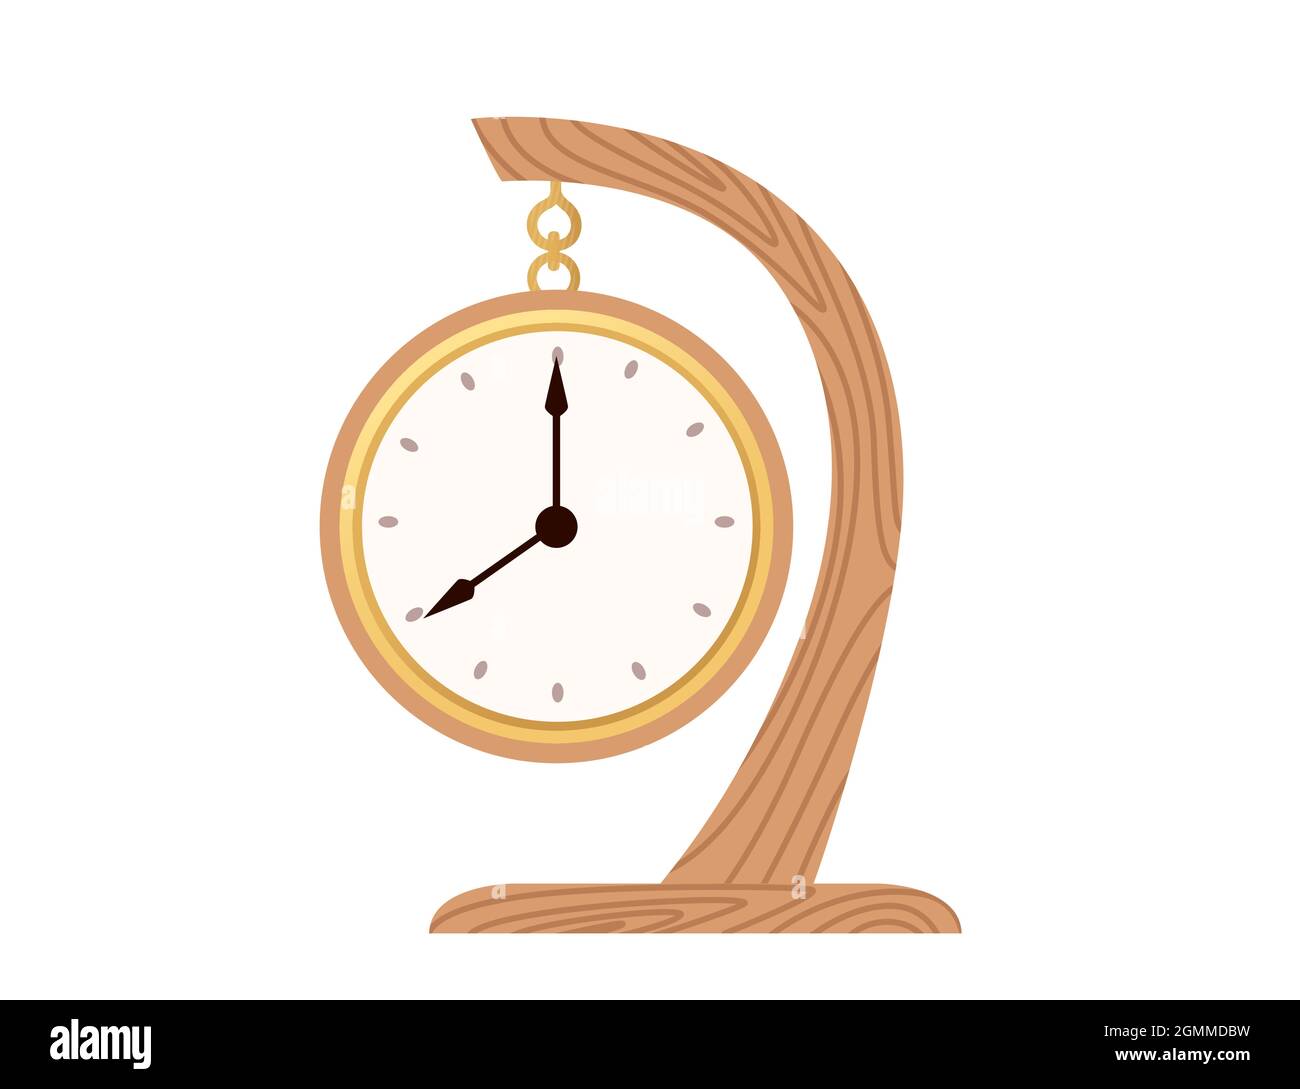 Altmodische hölzerne Tischuhr mechanische Uhr mit Goldlünette Luxus Dekoration Vektor Illustration auf weißem Hintergrund Stock Vektor